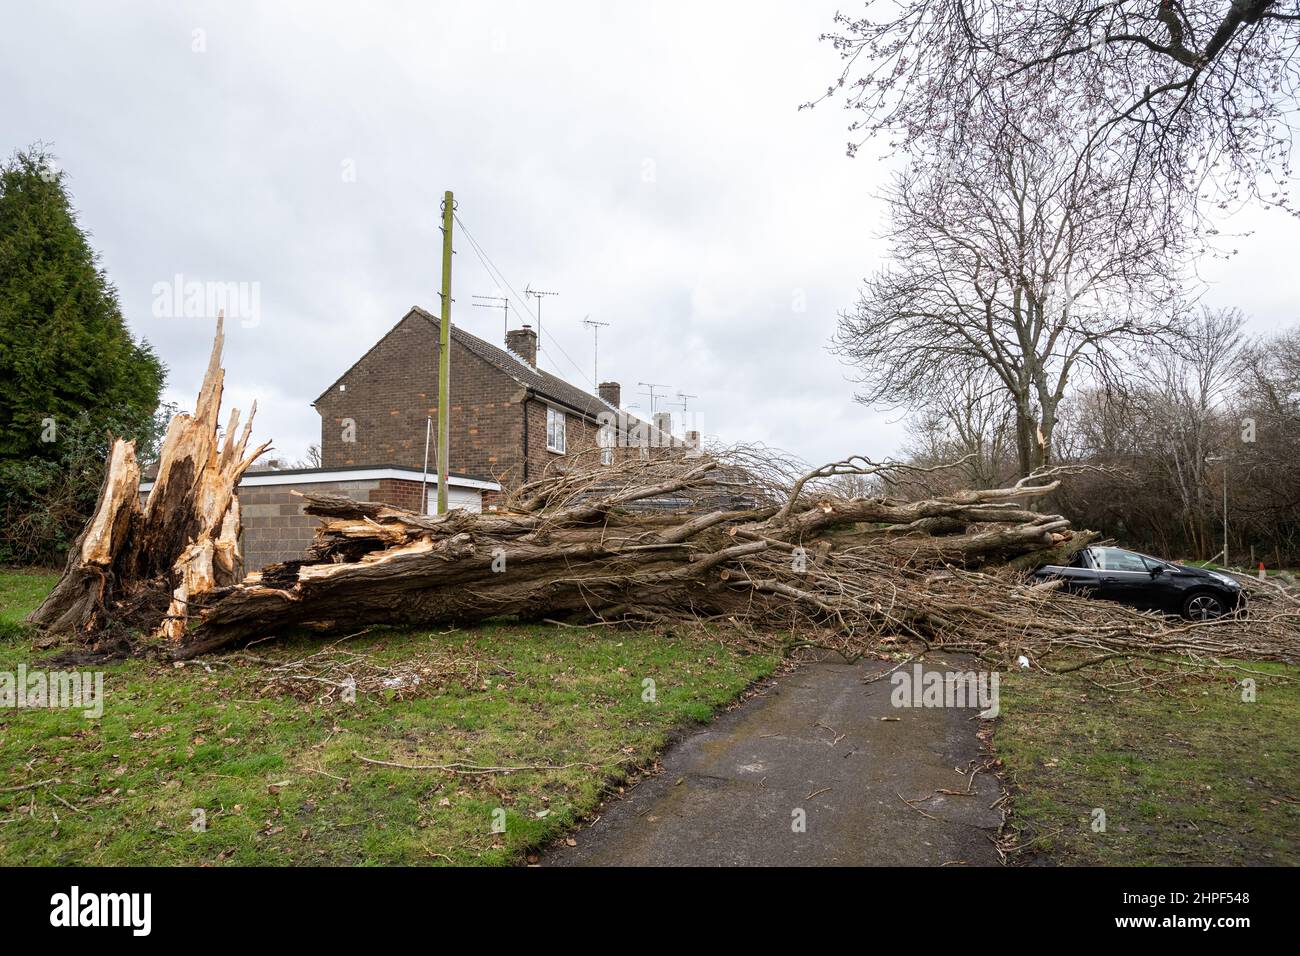 Febrero 2022, Storm Eunice Daño. Un coche aparcado fuera de las casas fue aplastado por un gran árbol caído durante la tormenta Eunice en Marrowbrook Lane, Farnborough, Hampshire, Inglaterra, Reino Unido. La velocidad de viento más alta jamás vista en Inglaterra de 122 mph fue registrada durante la tormenta que ocurrió el 18th de febrero de 2022, una de las tres tormentas nombradas en 5 días. El clima extremo está relacionado con la crisis del cambio climático. Foto de stock